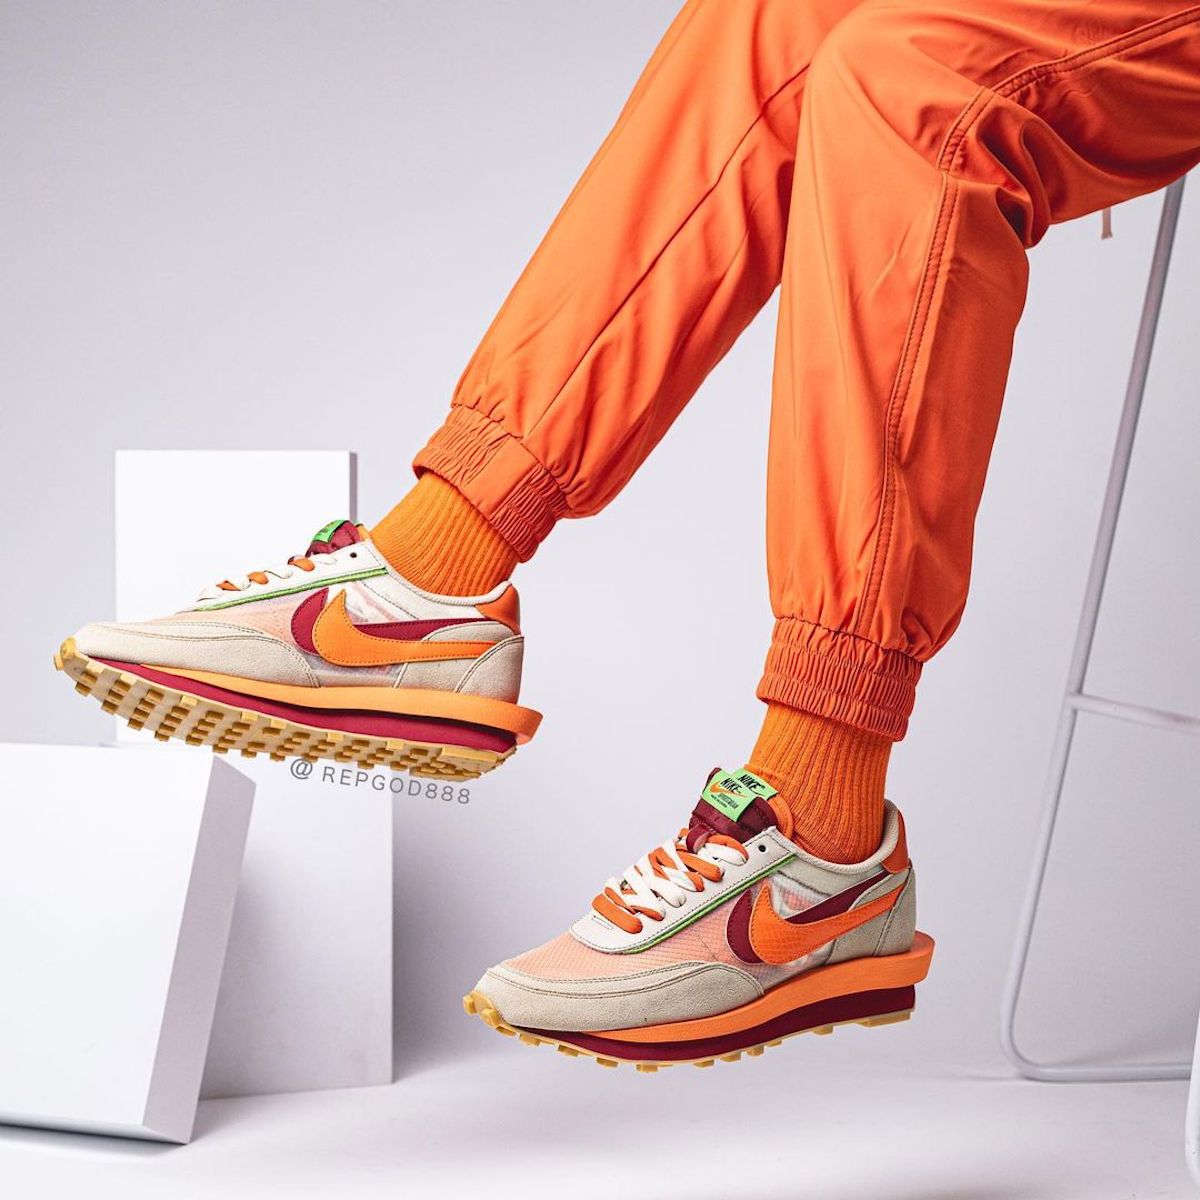 CLOT będzie kolejnym partnerem przy kolaboracji sacai x Nike na modelu